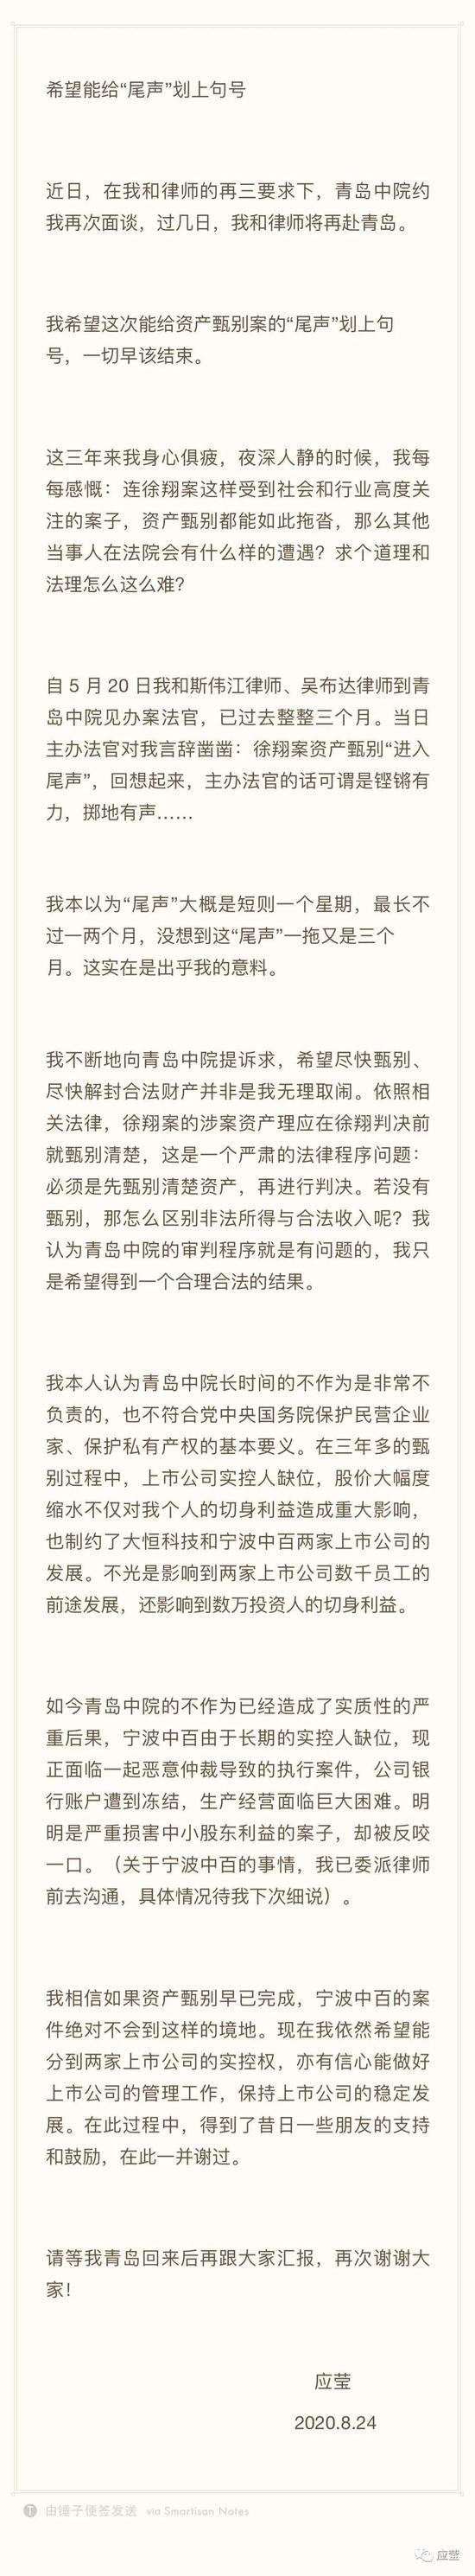 徐翔妻子将再赴青岛谈离婚案 称希望分到两家上市公司股权